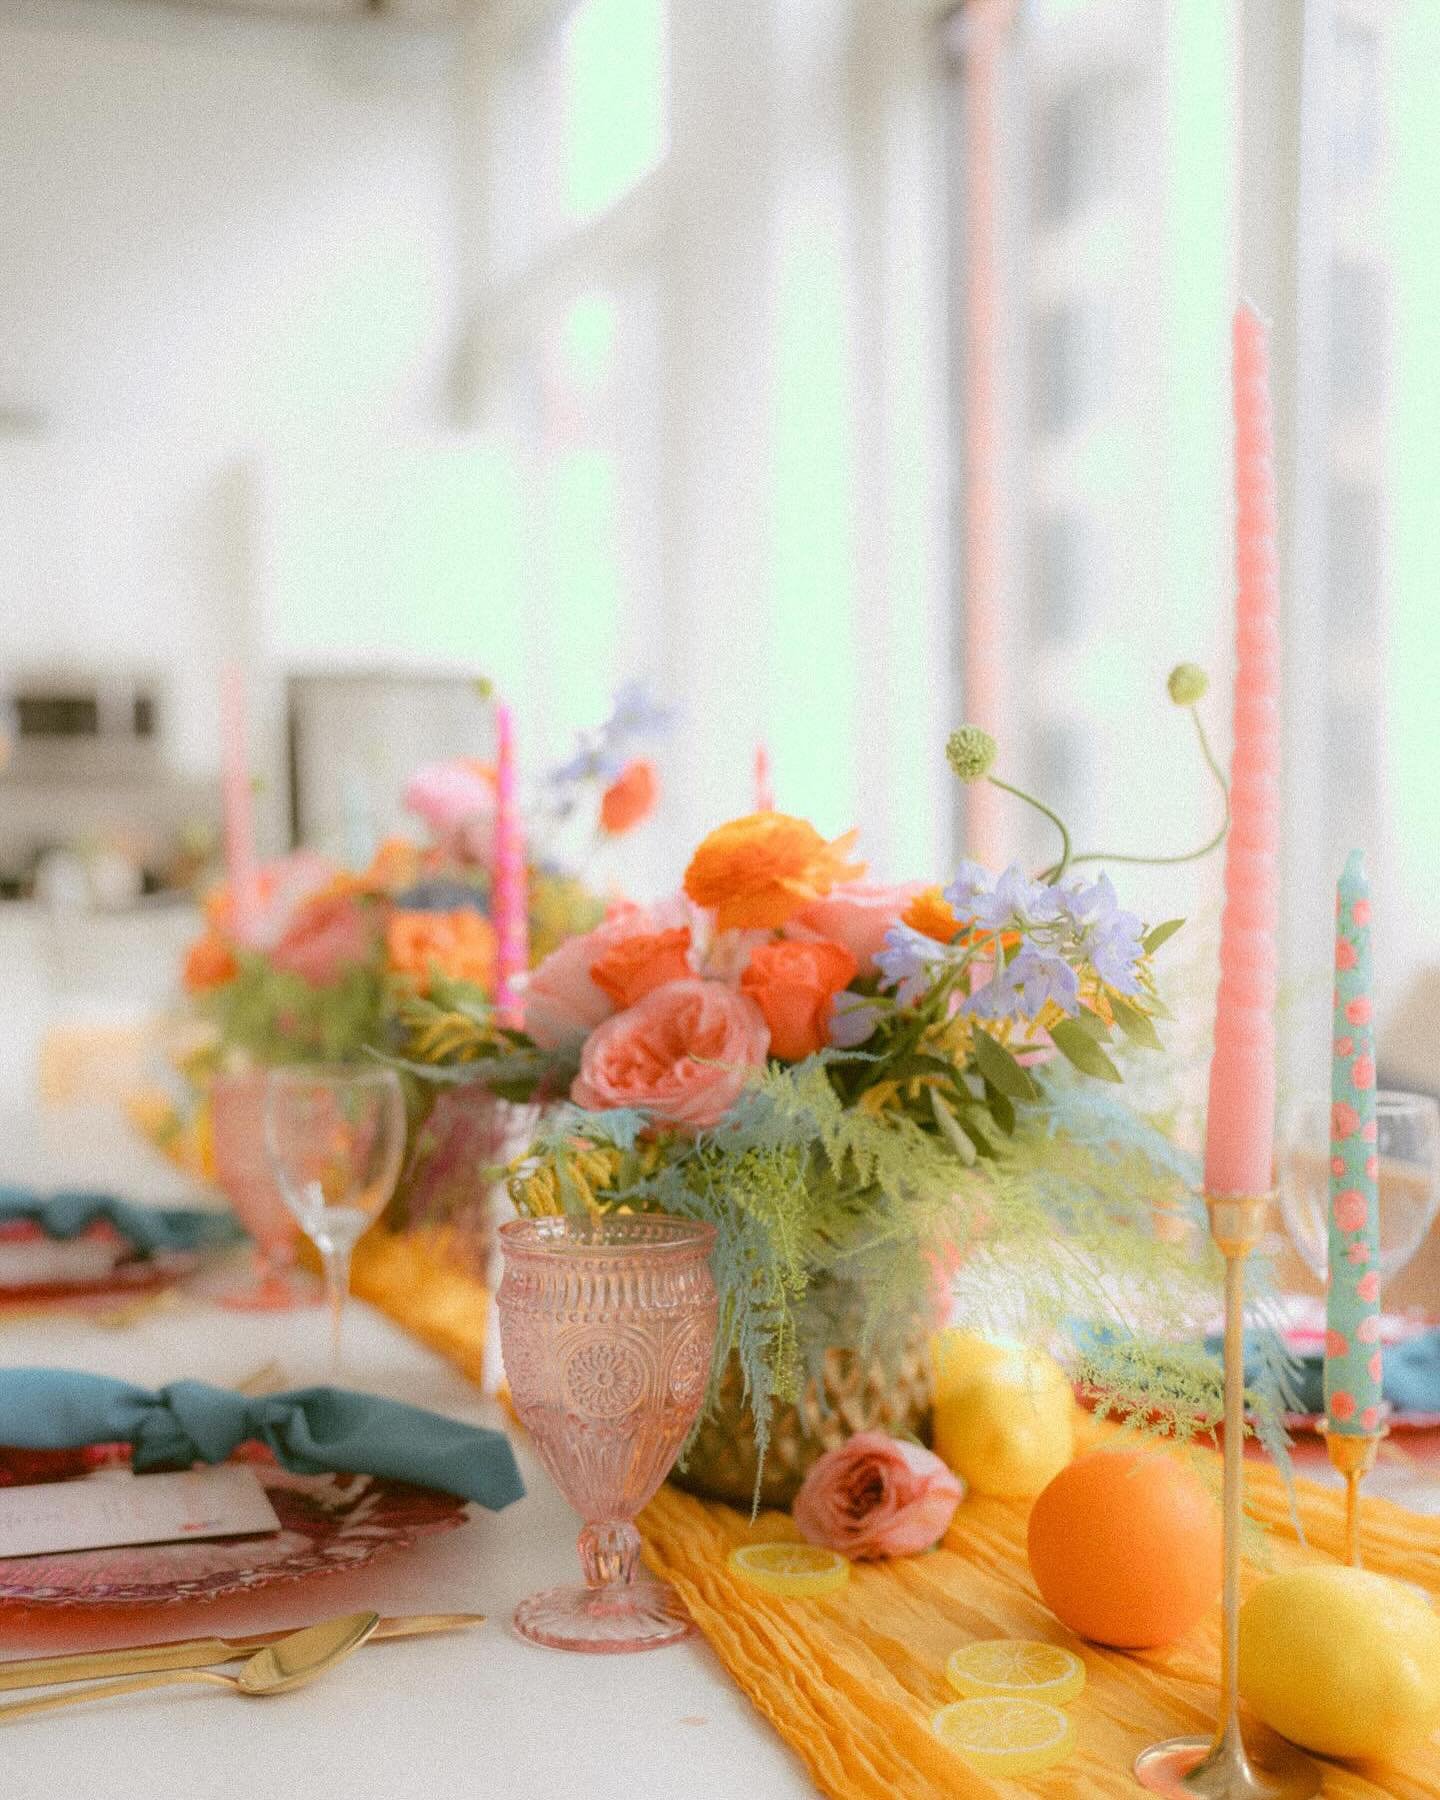 Sweet citrus 🍊 🍋 

Love these shots by @thekodakcollective 

.
.
.
#florist #flowers #brides2024 #brides2025 #chicago #chicagoflorist #mkeflorist #chiflorist #weddingflorist #eventflorist #weddinginspiration #flowersofinstagram #bridesbouquet #wedd